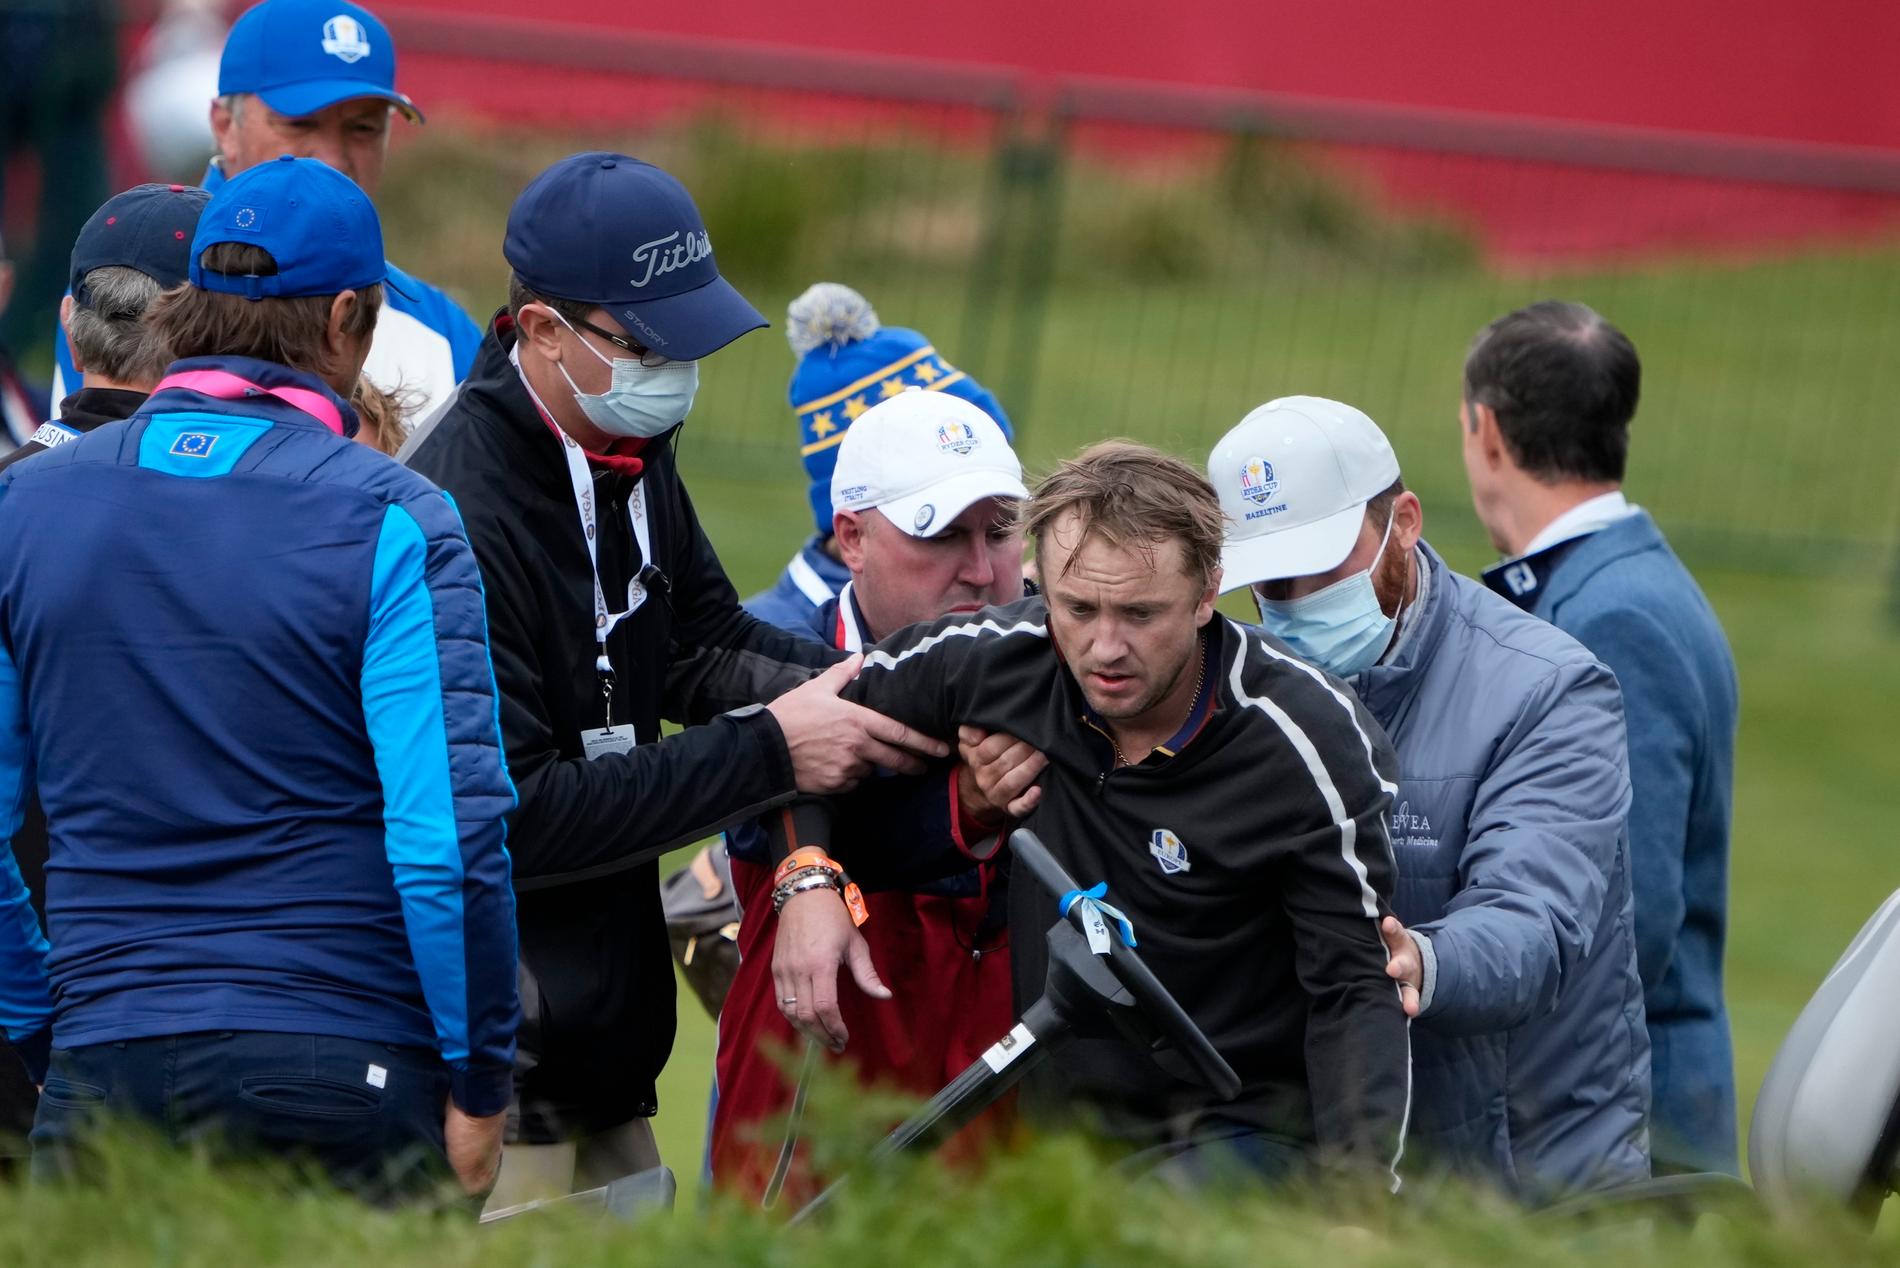 Tom Felton kollapsade under ett evenemang inför golfturneringen Ryder cup i torsdags.